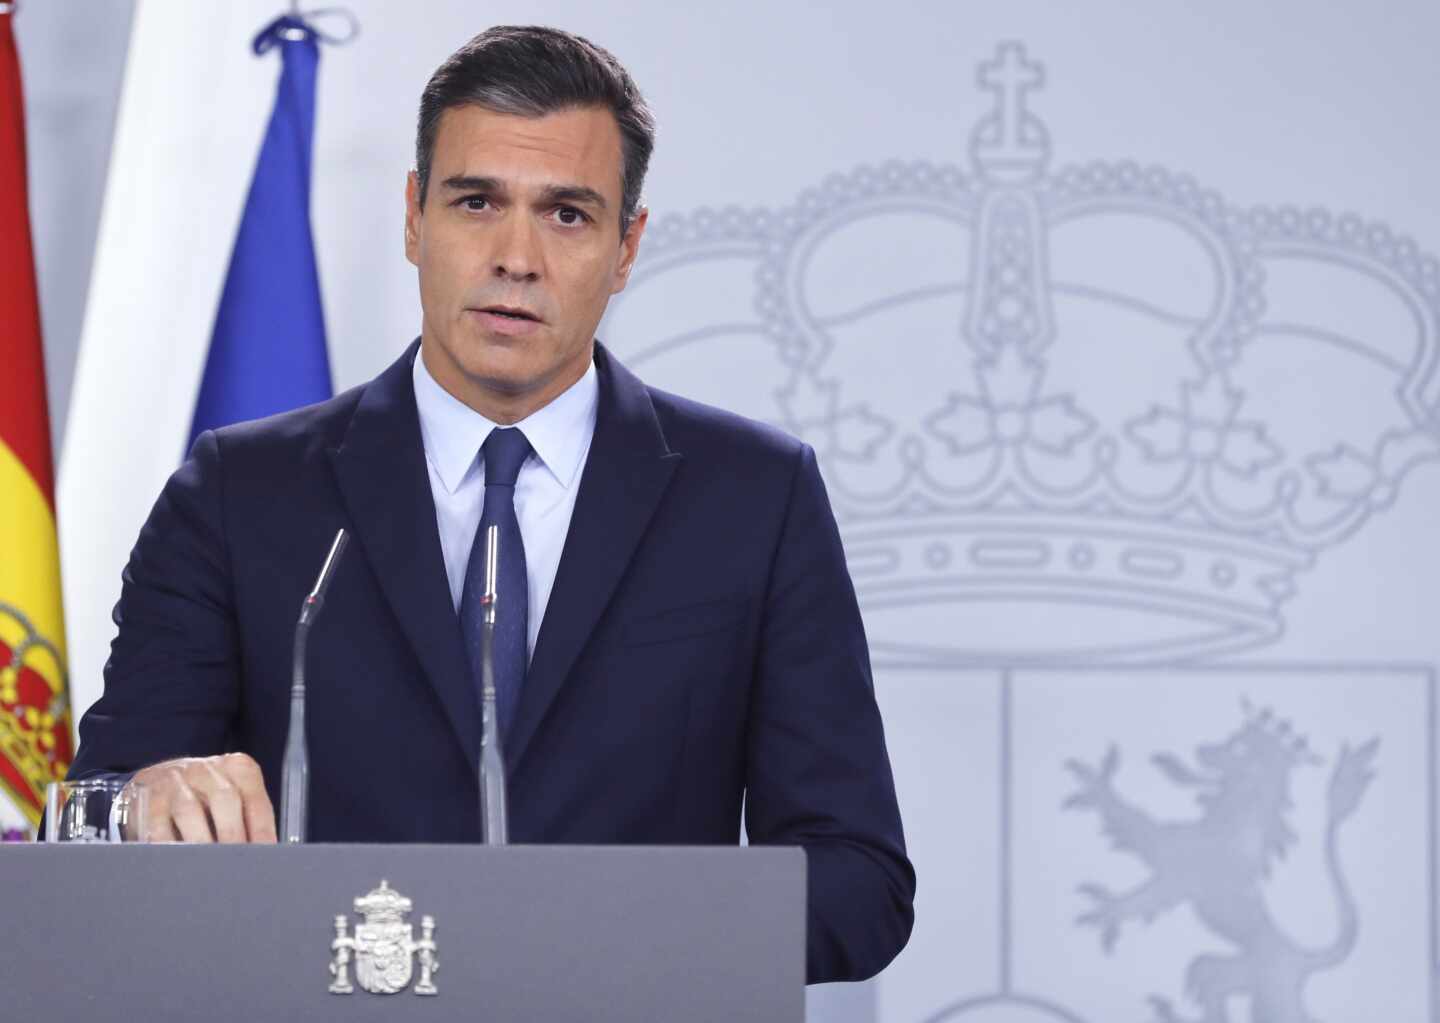 Sánchez se resigna a que haya "diversos enfoques" en su "Gobierno plural"